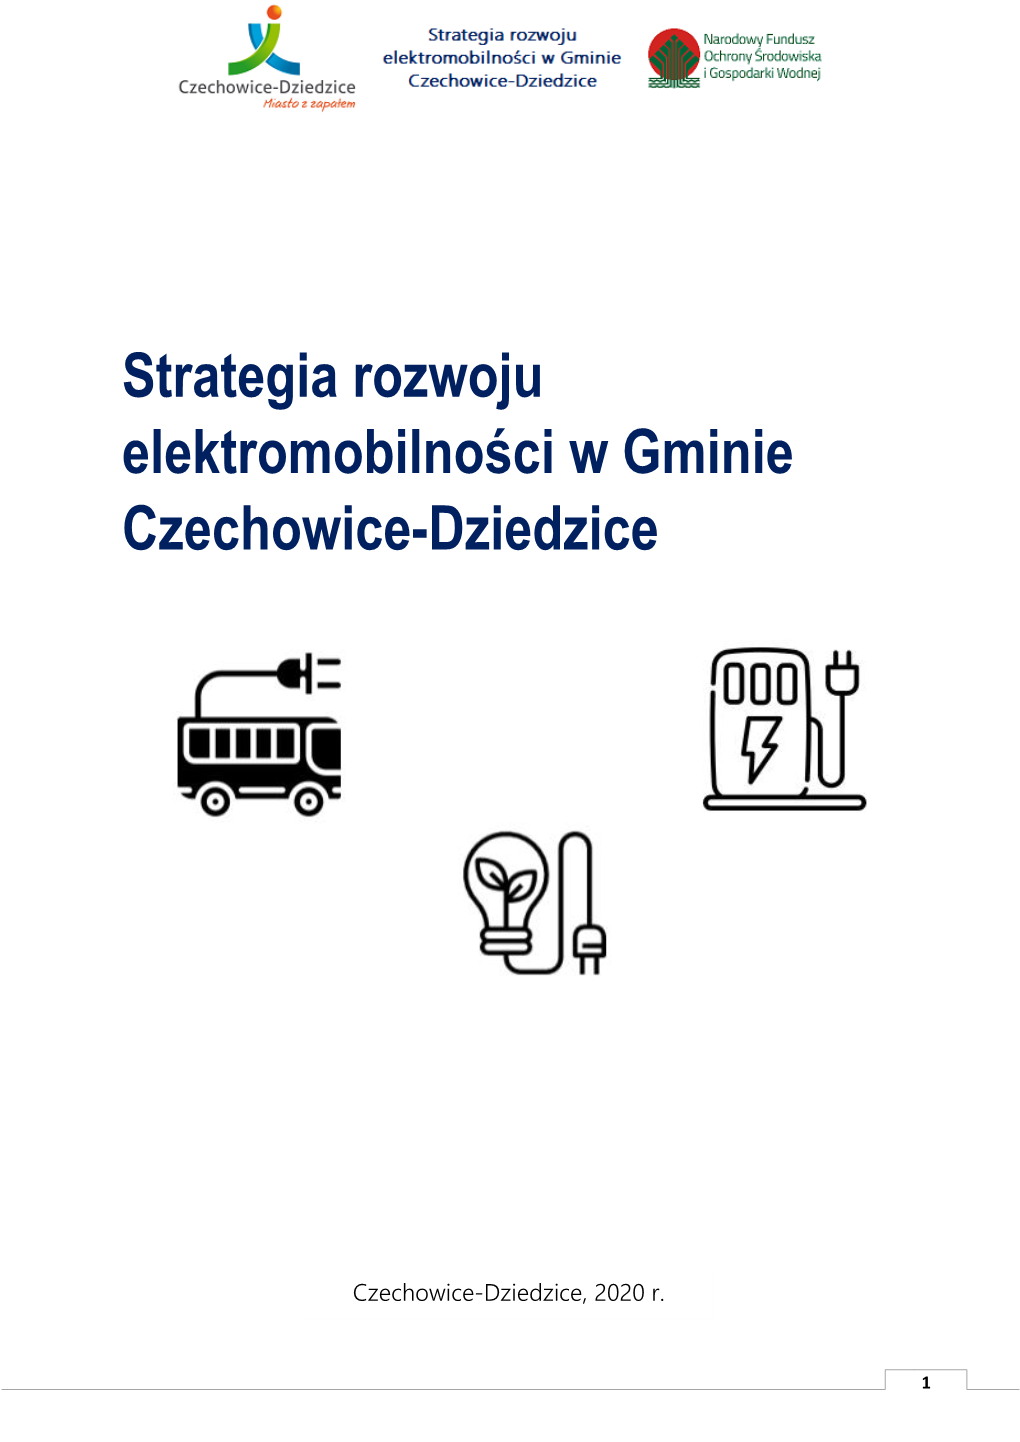 Strategia Rozwoju Elektromobilności W Gminie Czechowice-Dziedzice